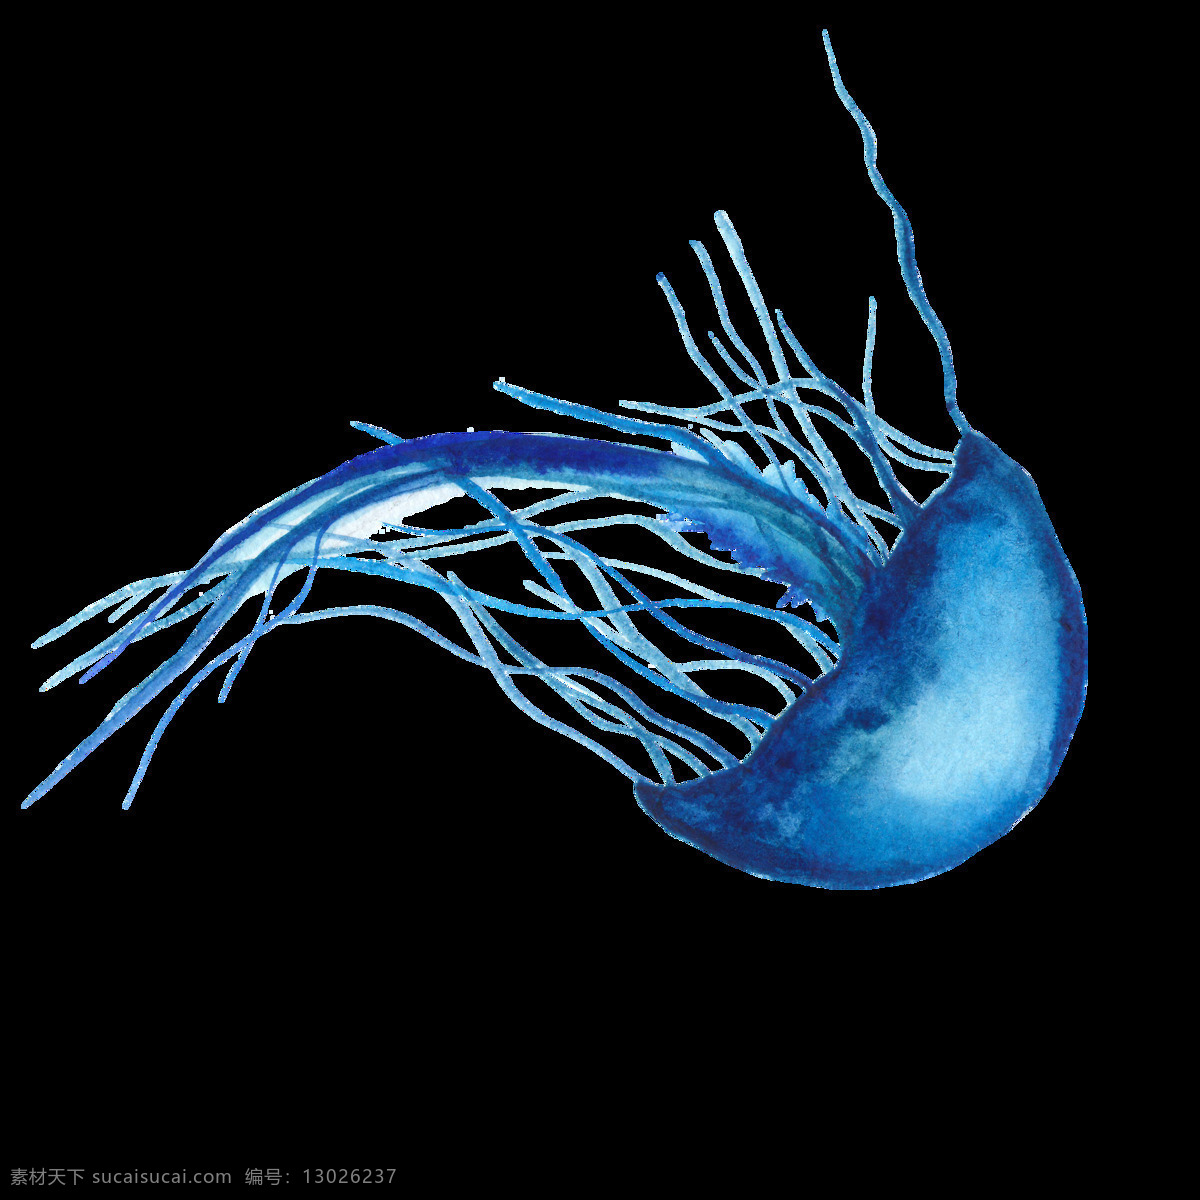 海洋生物 水母 图案 淡蓝色水彩画 水彩元素 手绘涂鸦 海洋元素 海洋主题装饰